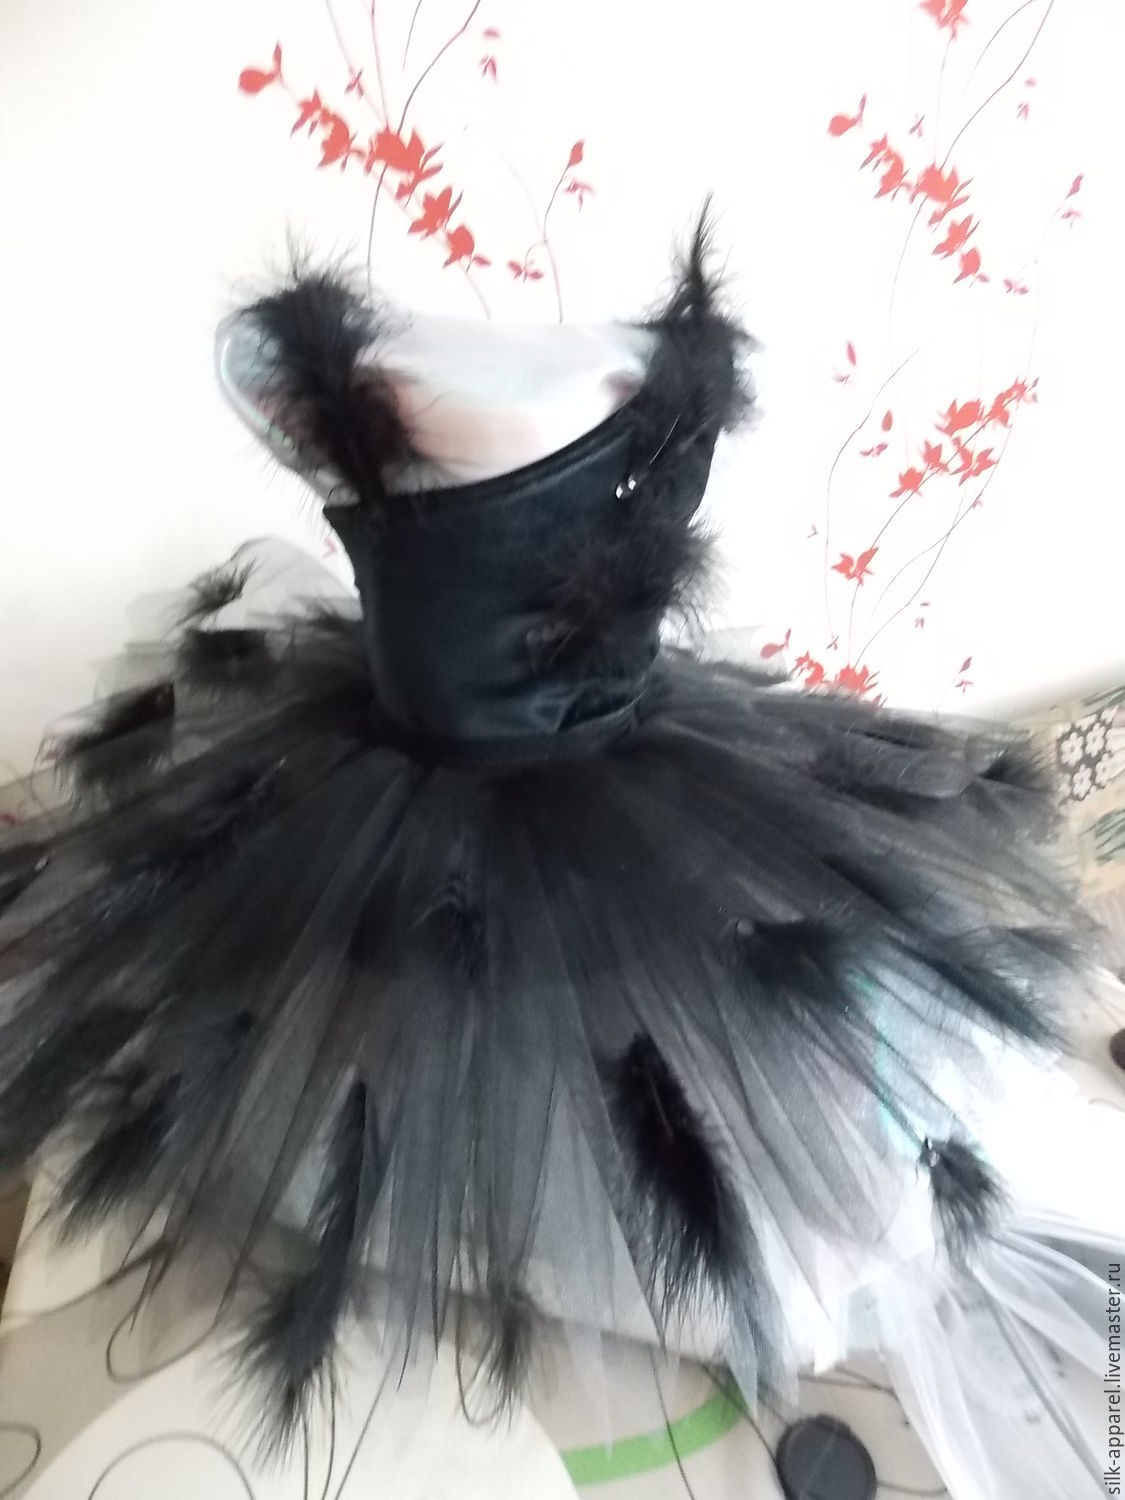 Взрослый карнавальный костюм Умирающий лебедь, 52-54 размер